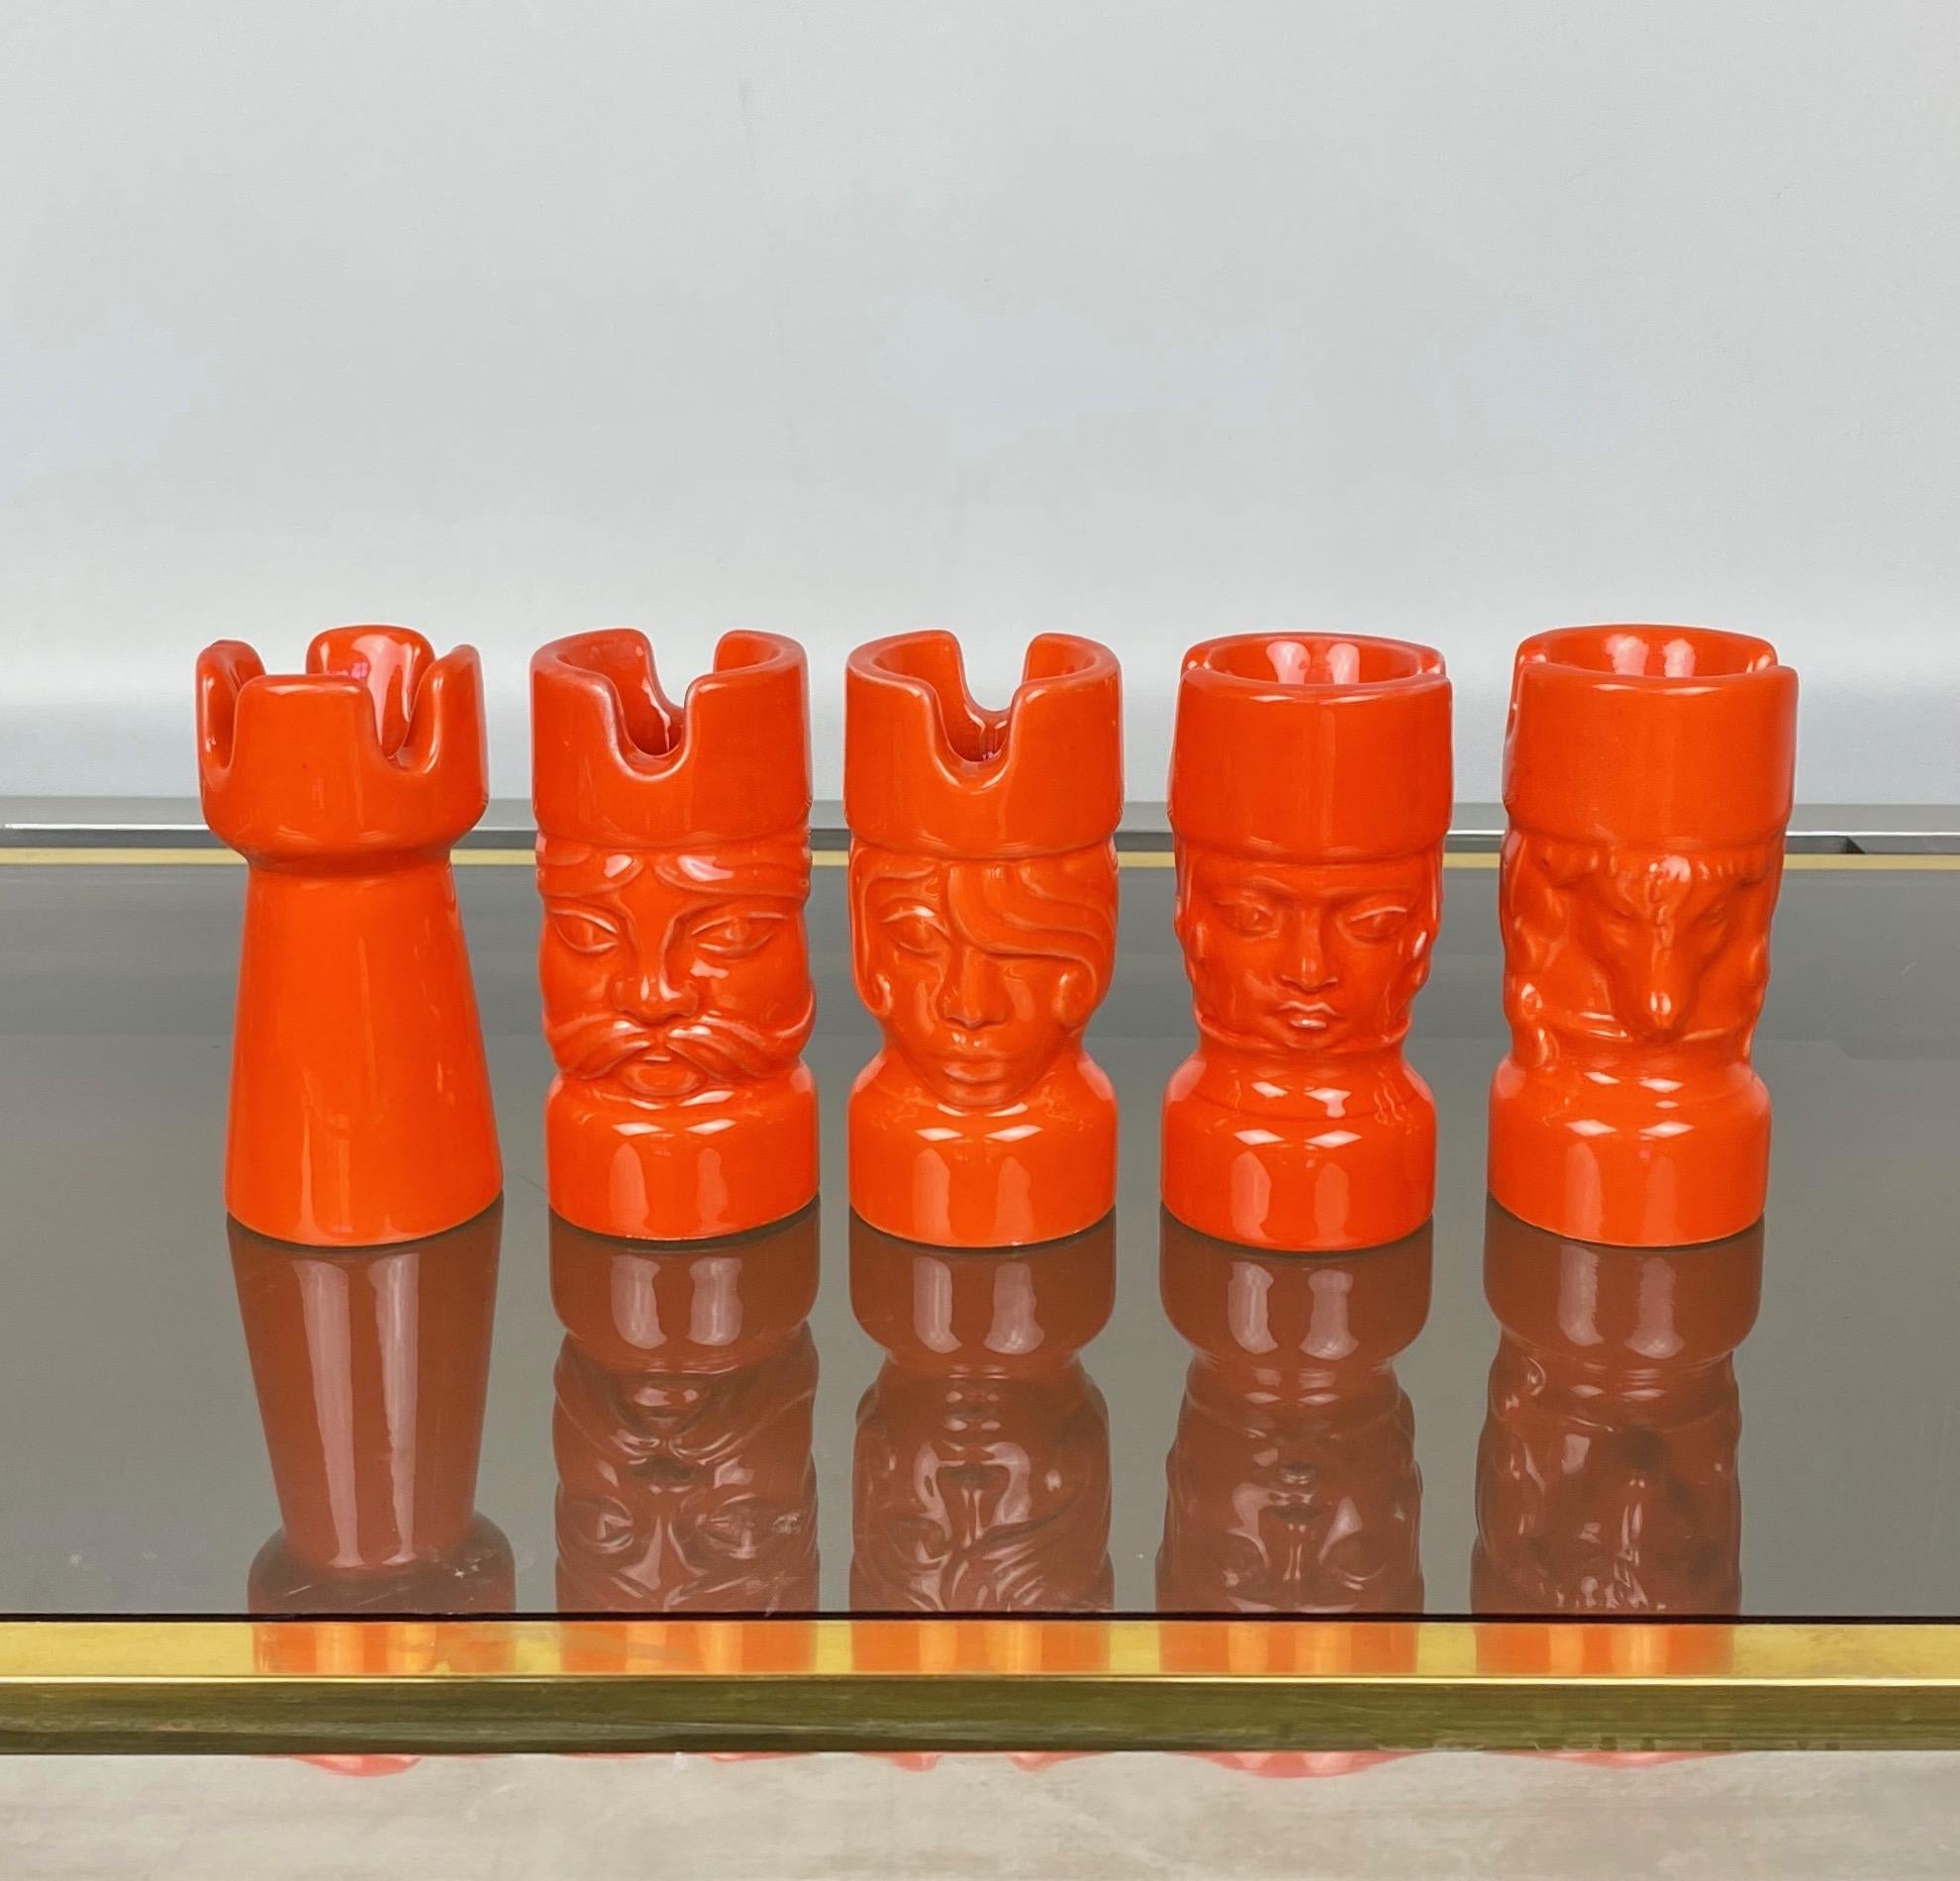 Five chess pieces in orange ceramic by Il Picchio, Italy, 1970s.